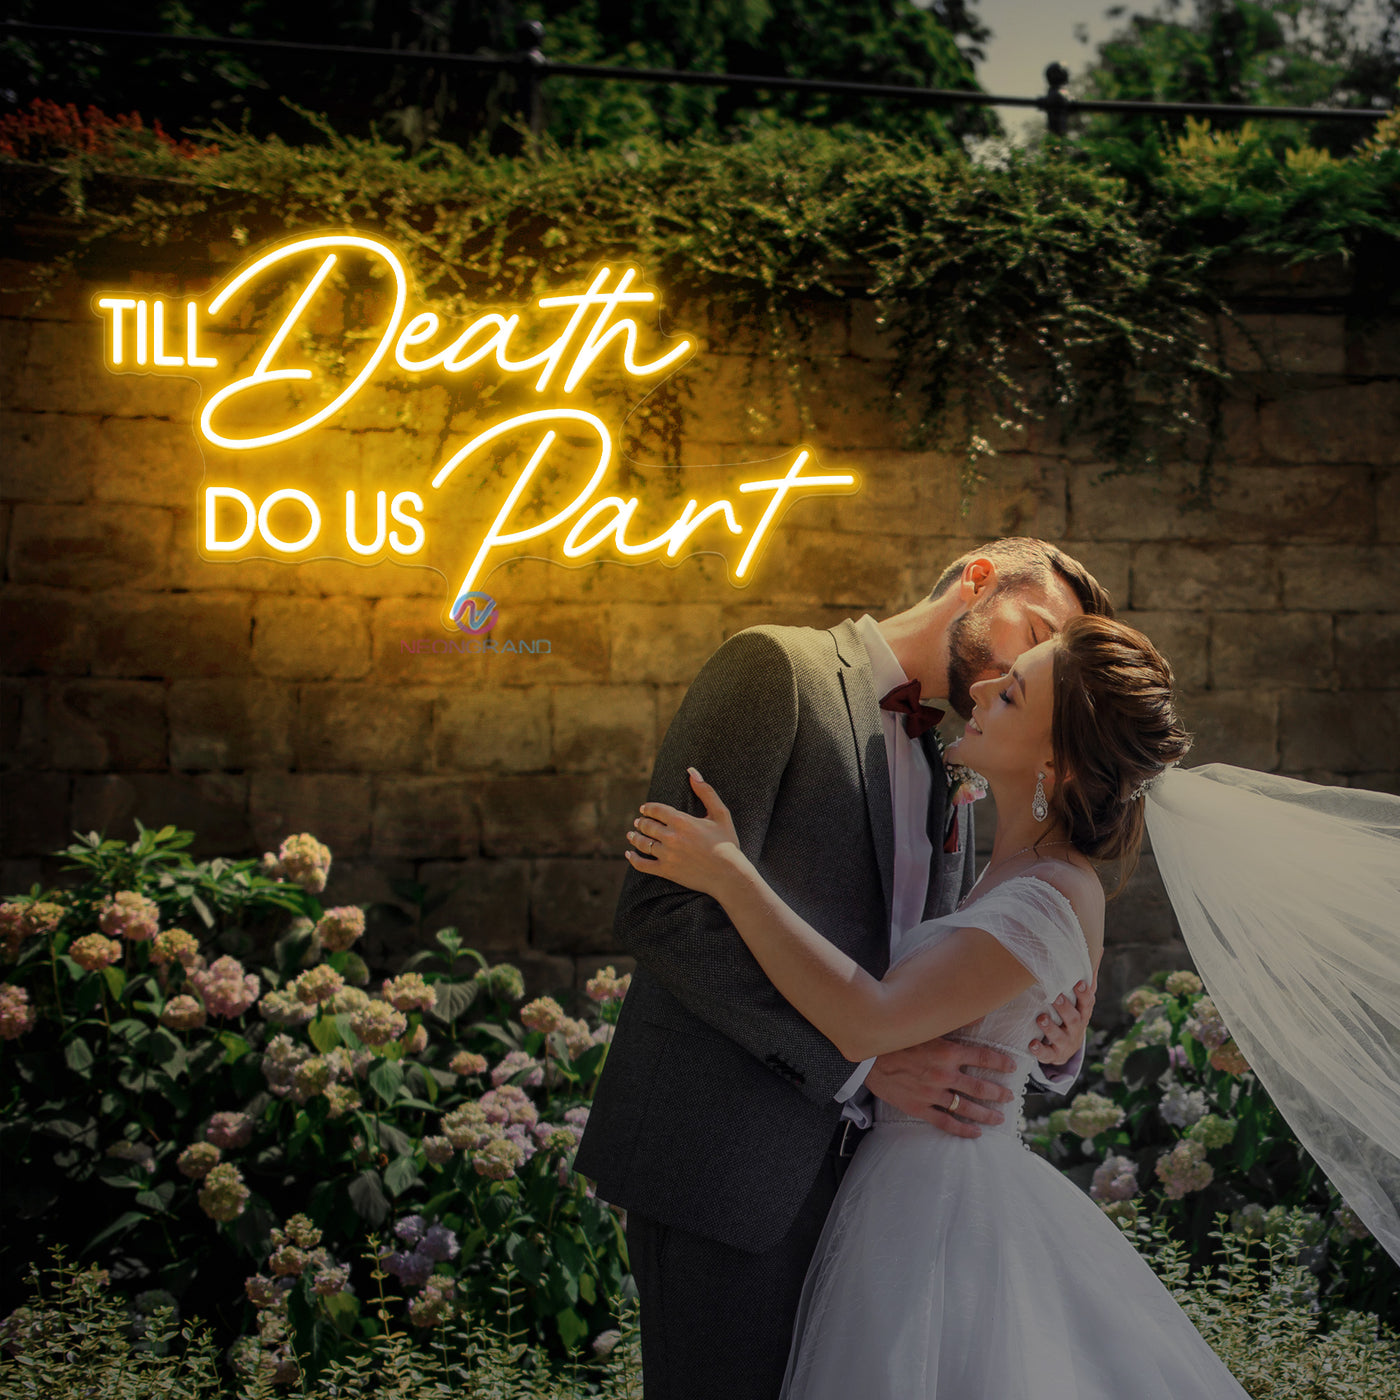 Til Death Do Us Part Neon Sign Wedding Led Light orange